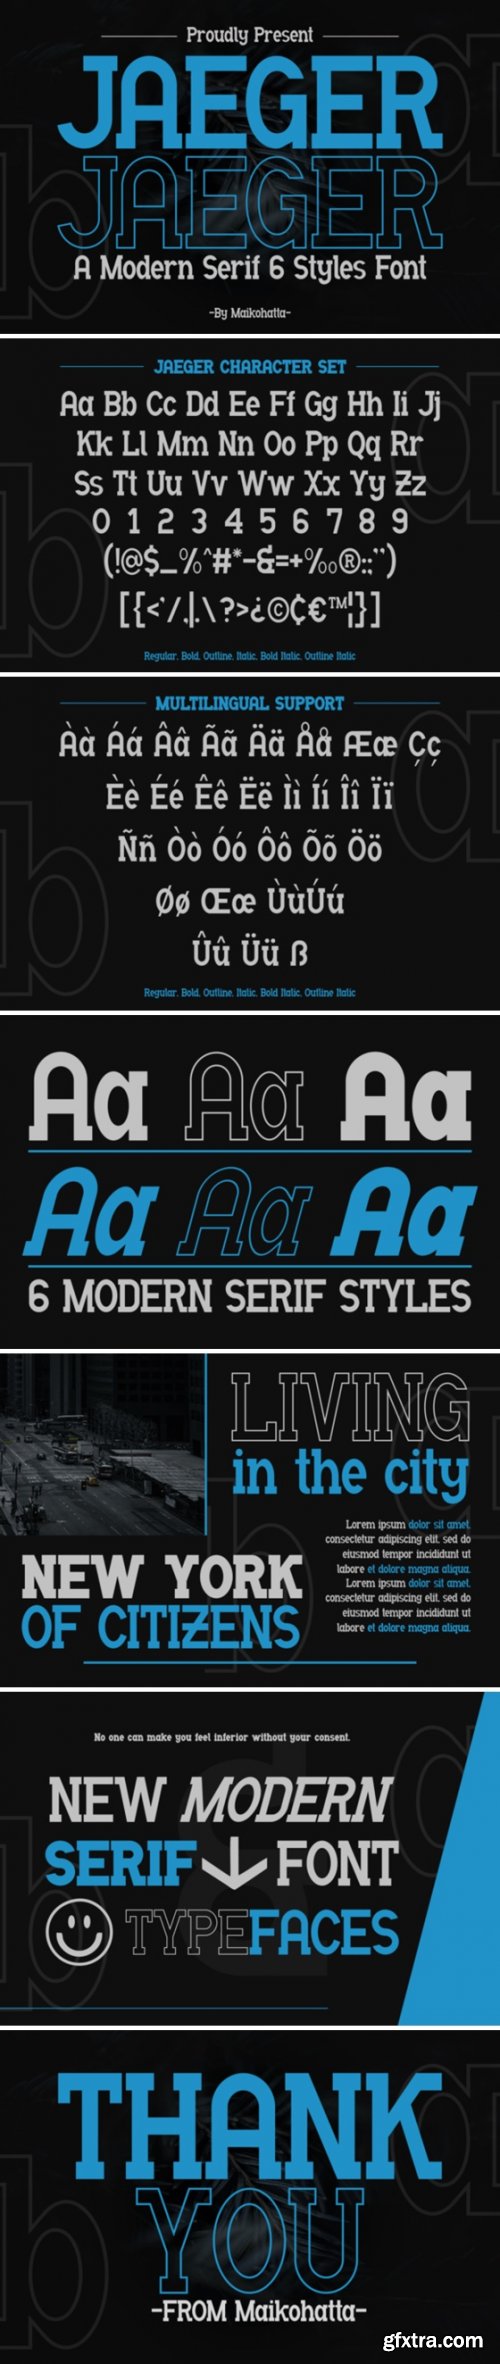 FontBundles - Jaeger - Modern Serif Font Family 3035608